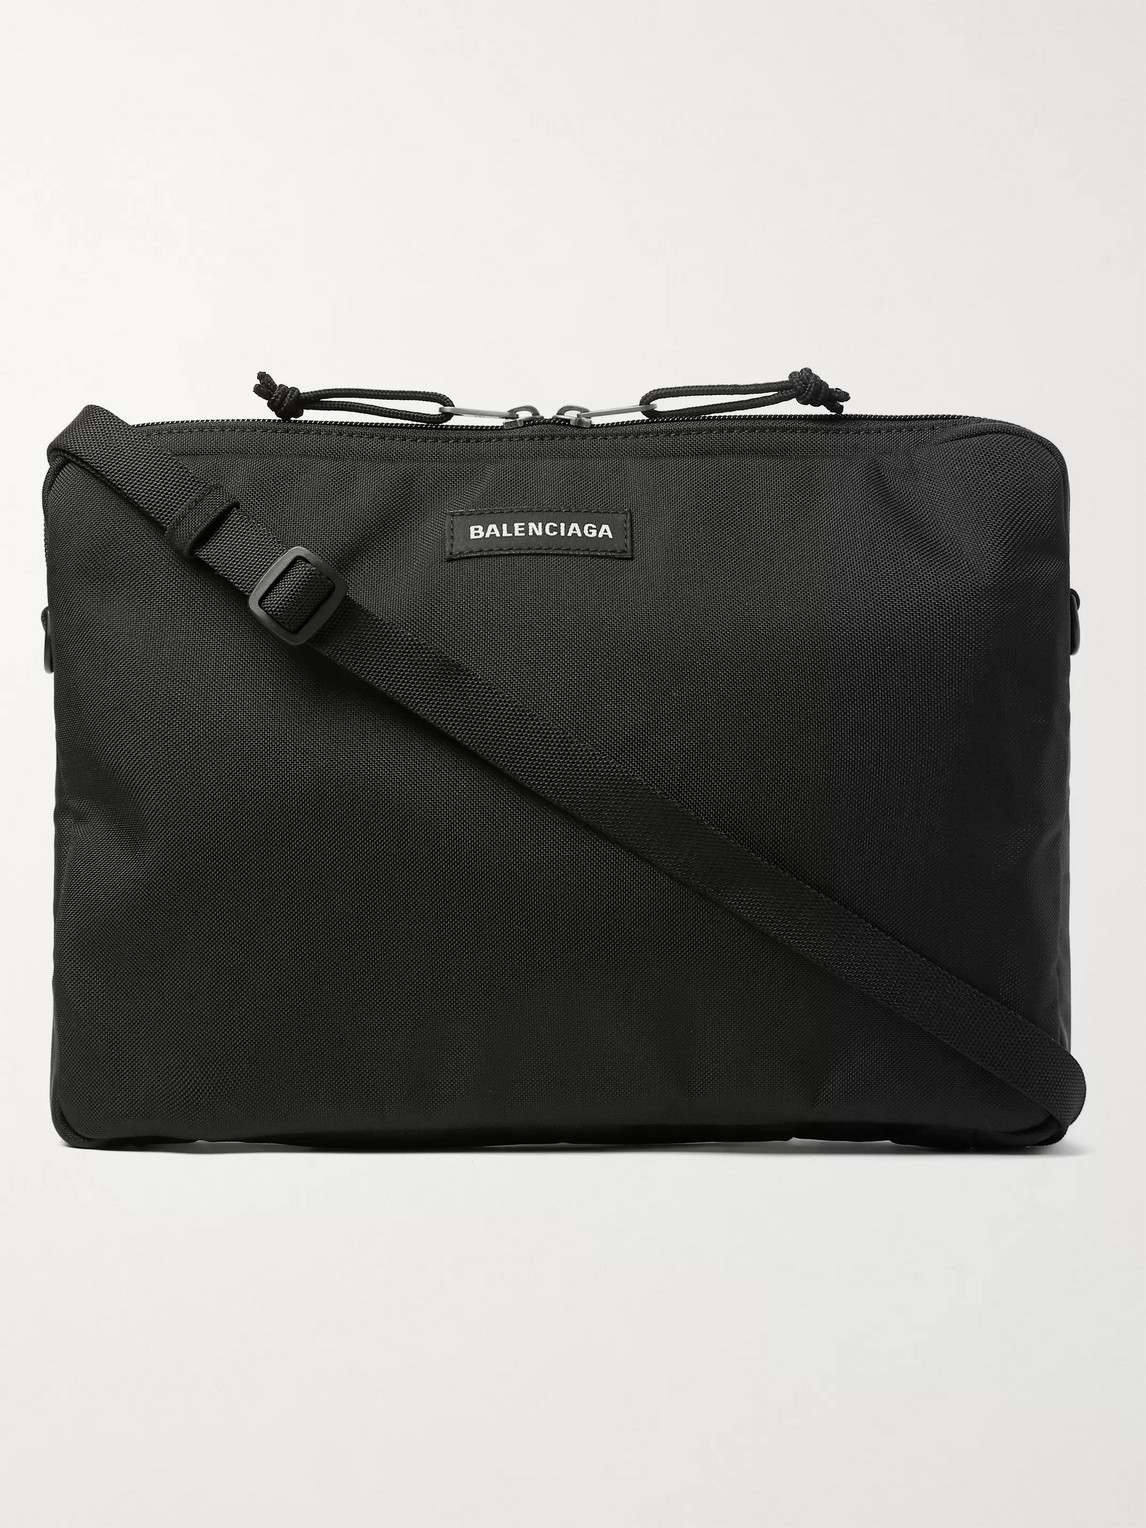 Balenciaga Canvas Messenger Bag In Black